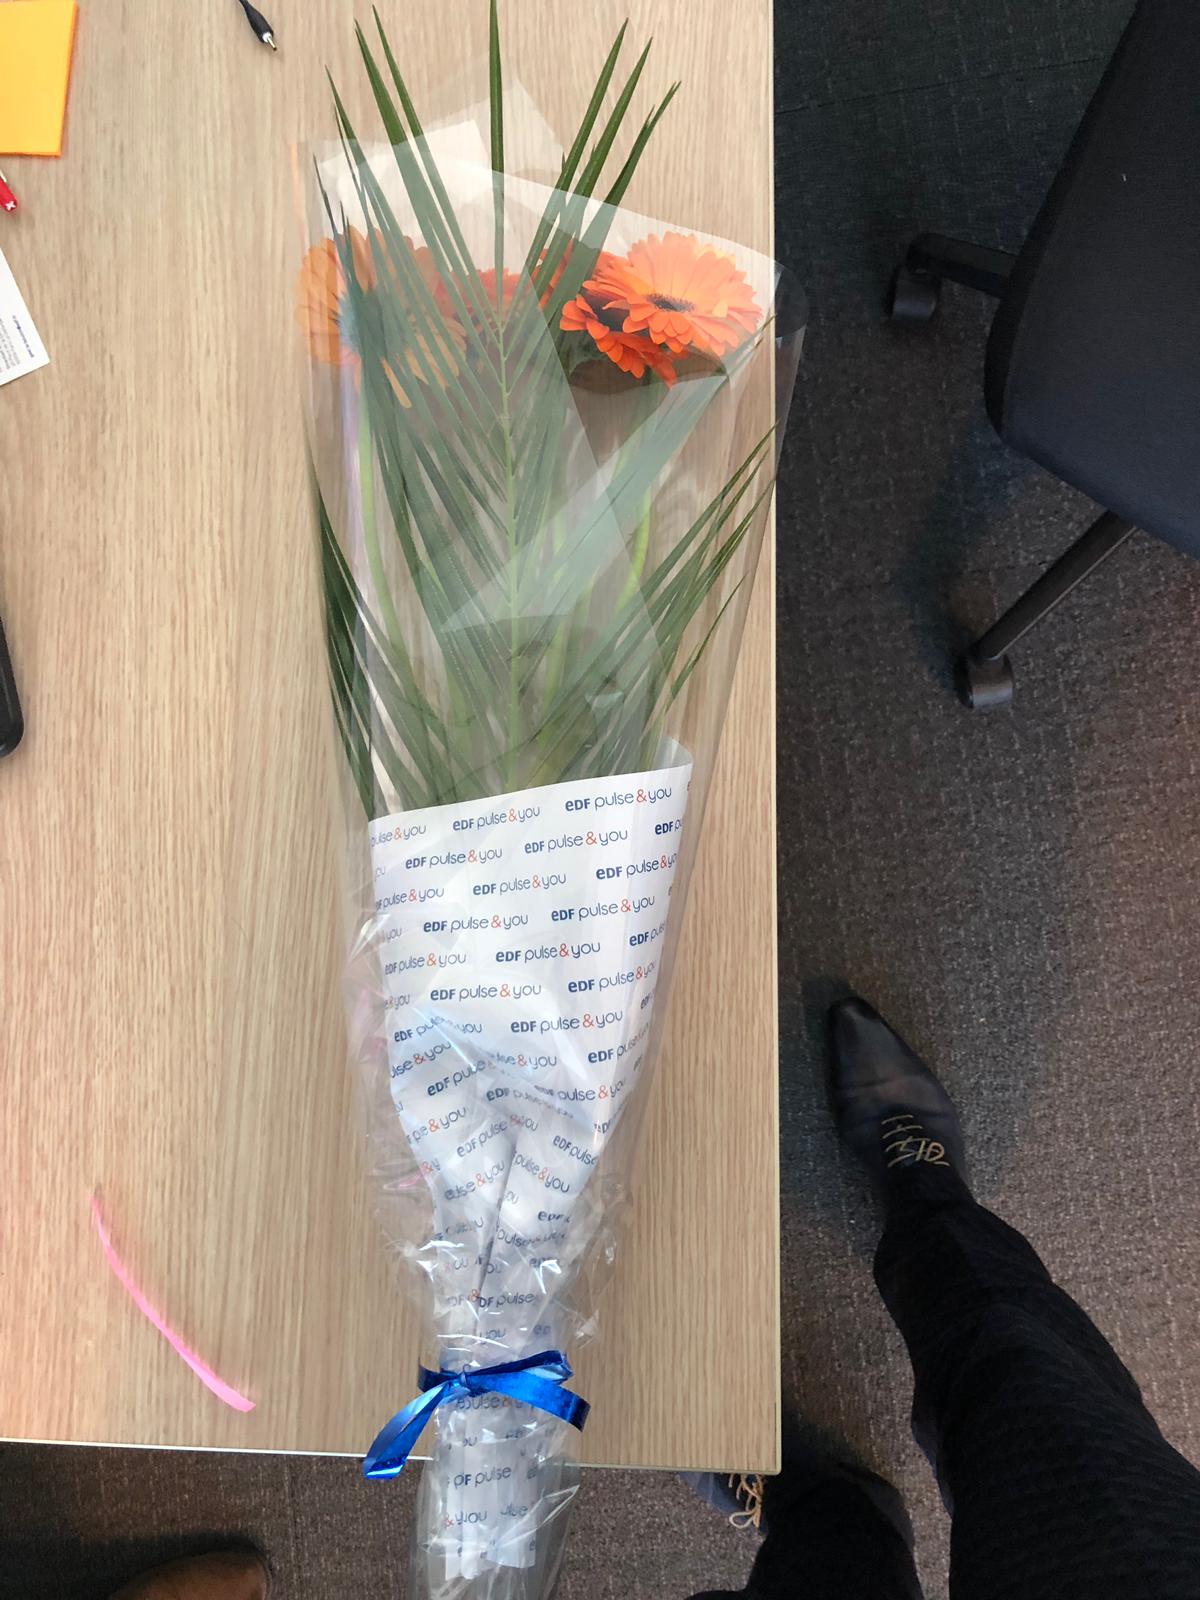 Le bouquet de fleurs EDF Pulse & You (25 mars 2019)